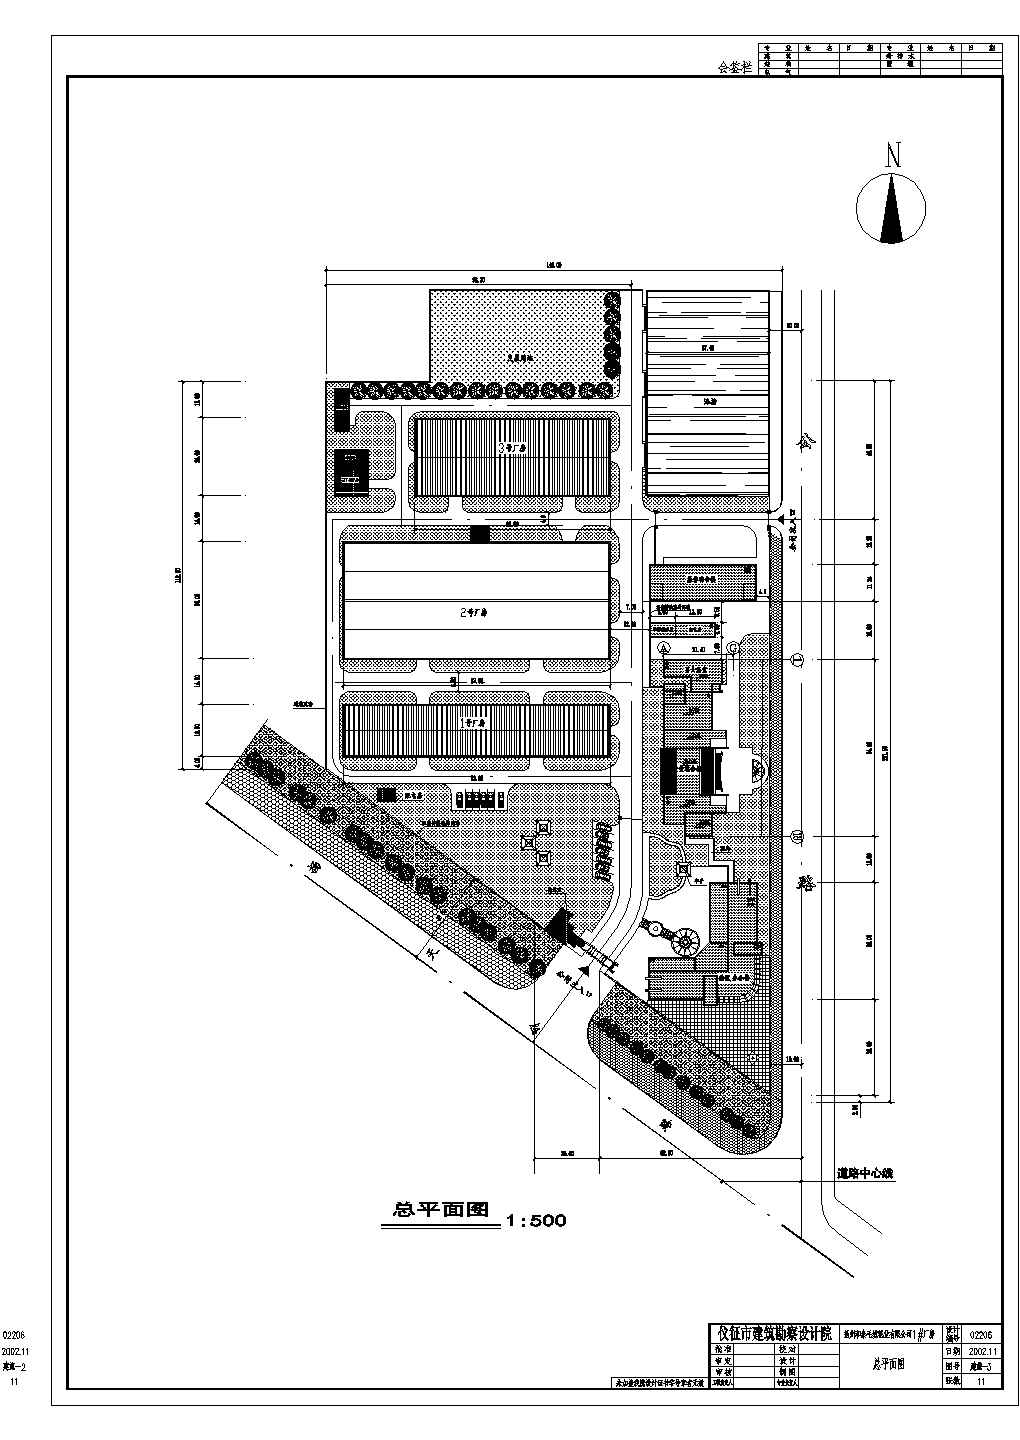 工厂总体规划设计cad图(含总平面图)